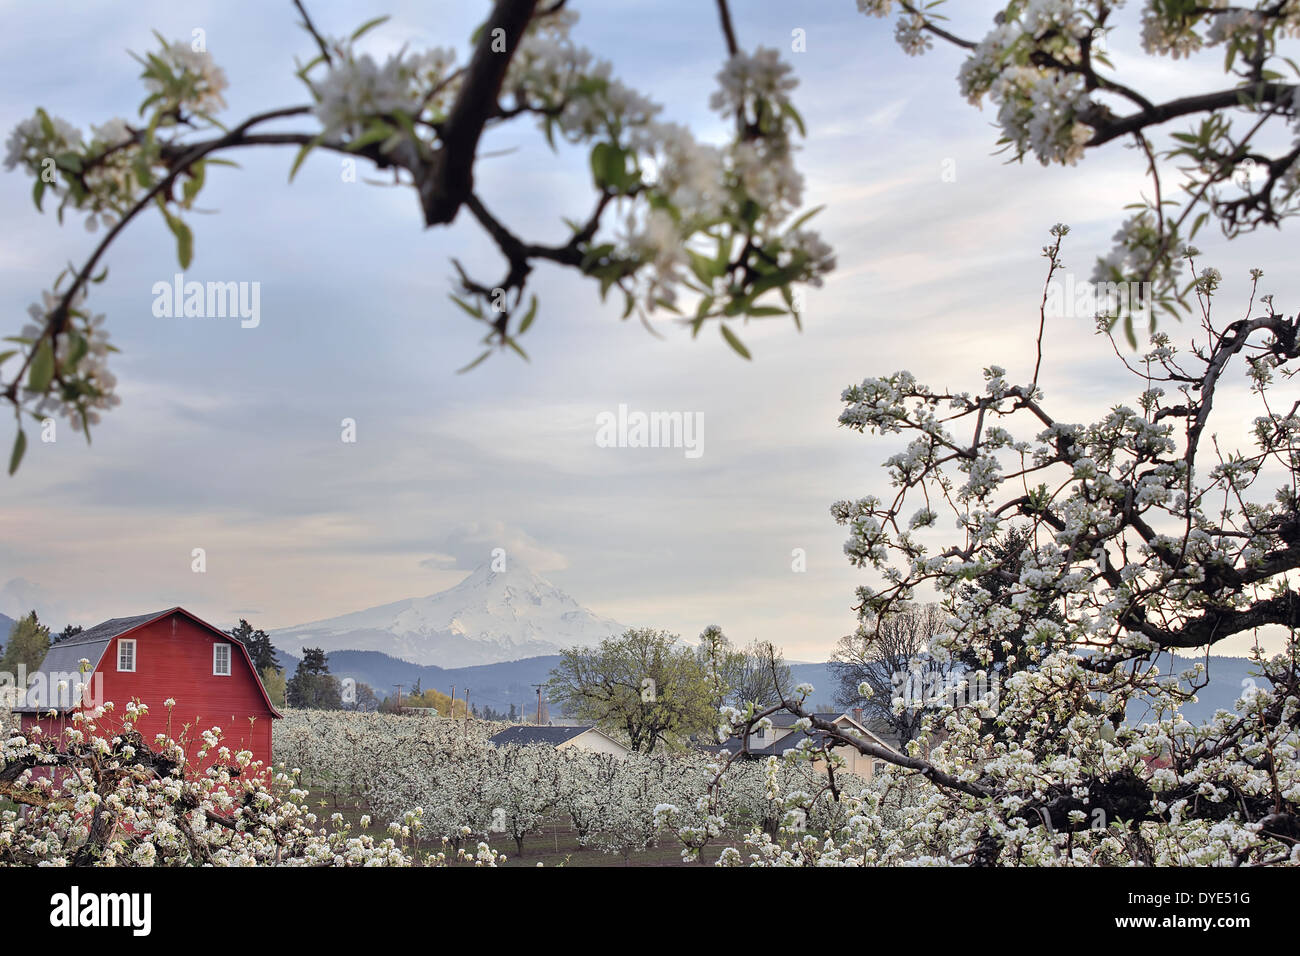 Pear Tree Orchard avec grange rouge et Mount Hood Hood River dans l'Oregon au cours de la saison du printemps Banque D'Images